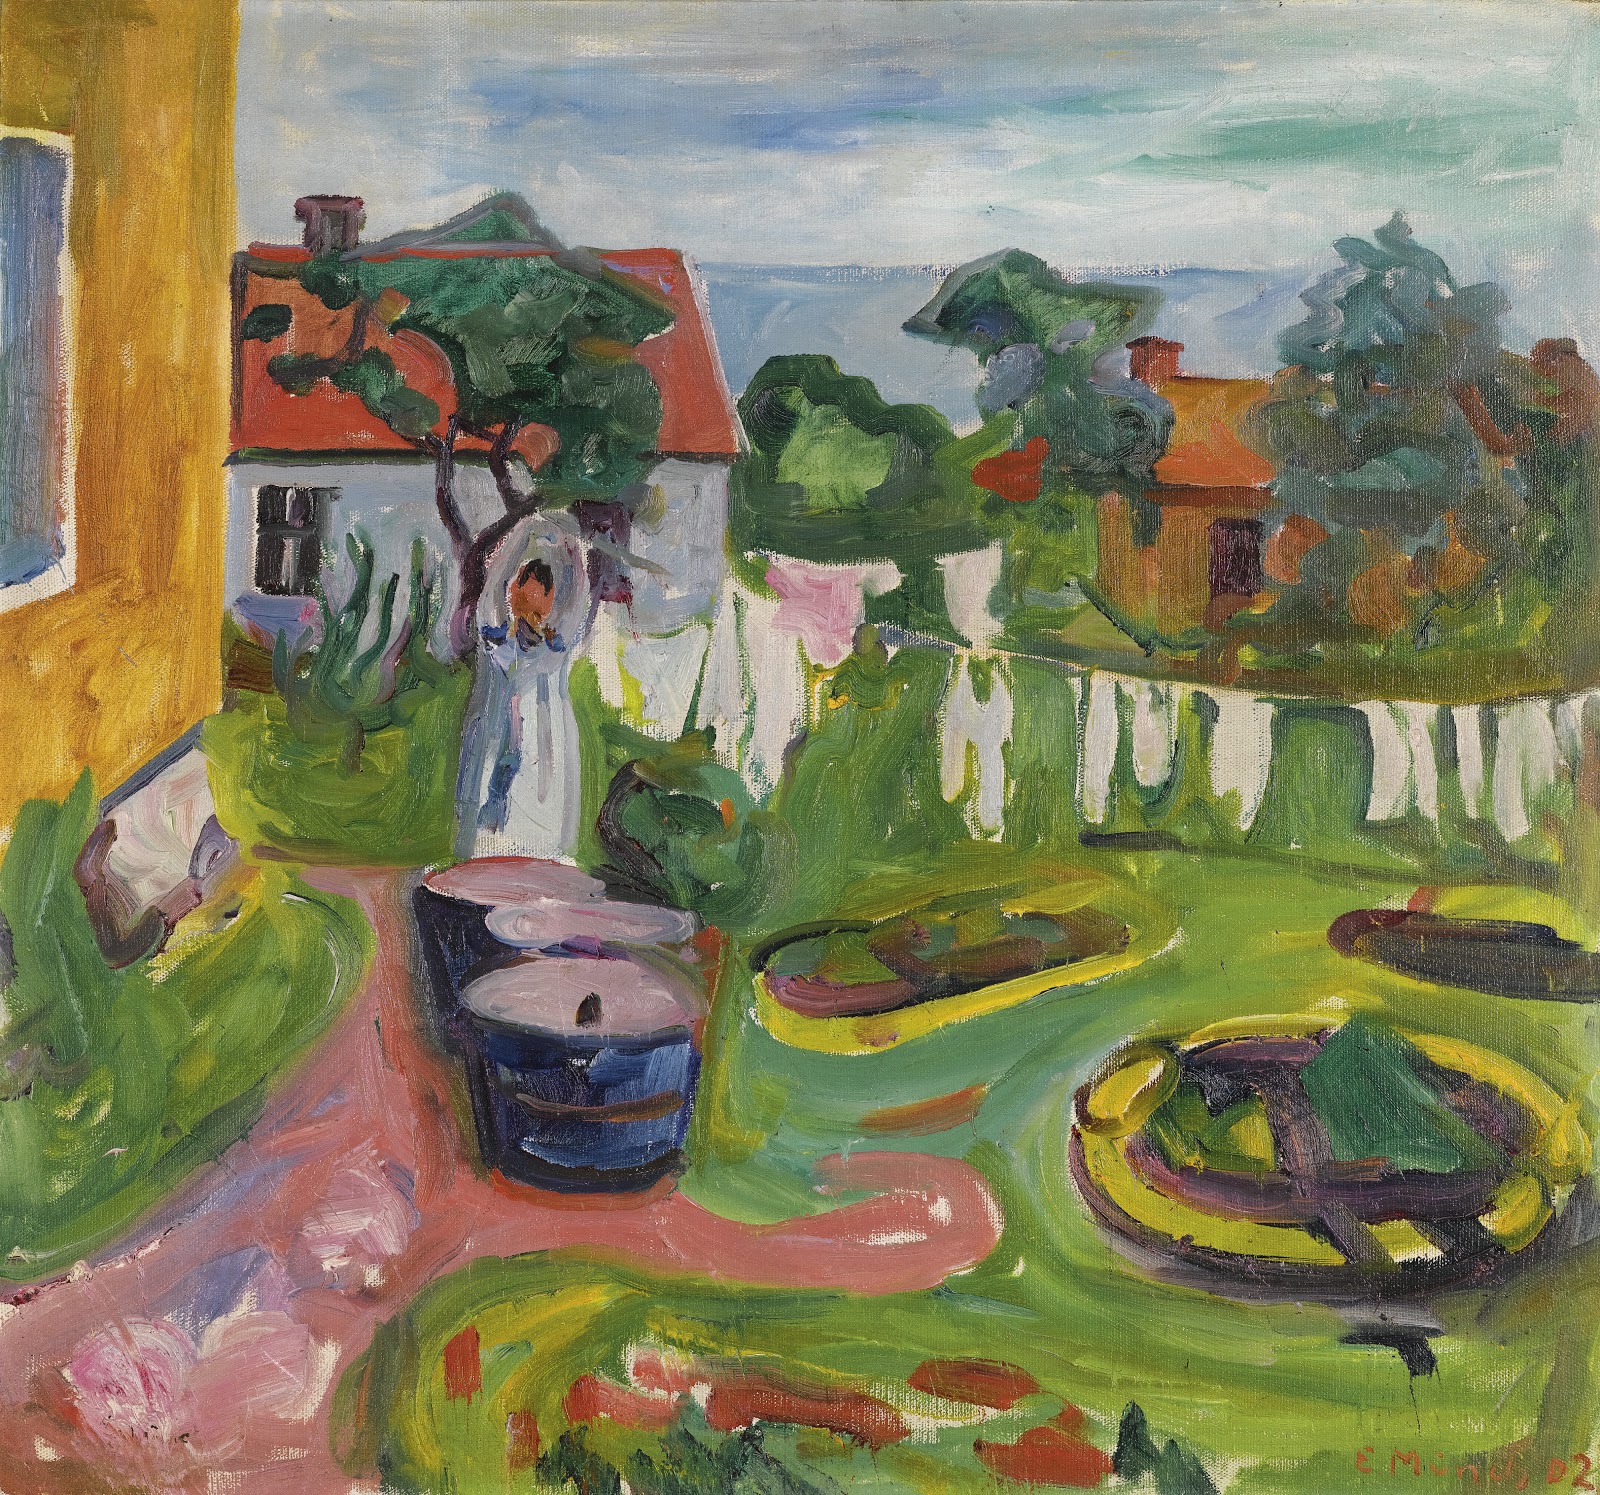 Edvard+Munch-1863-1944 (28).jpg